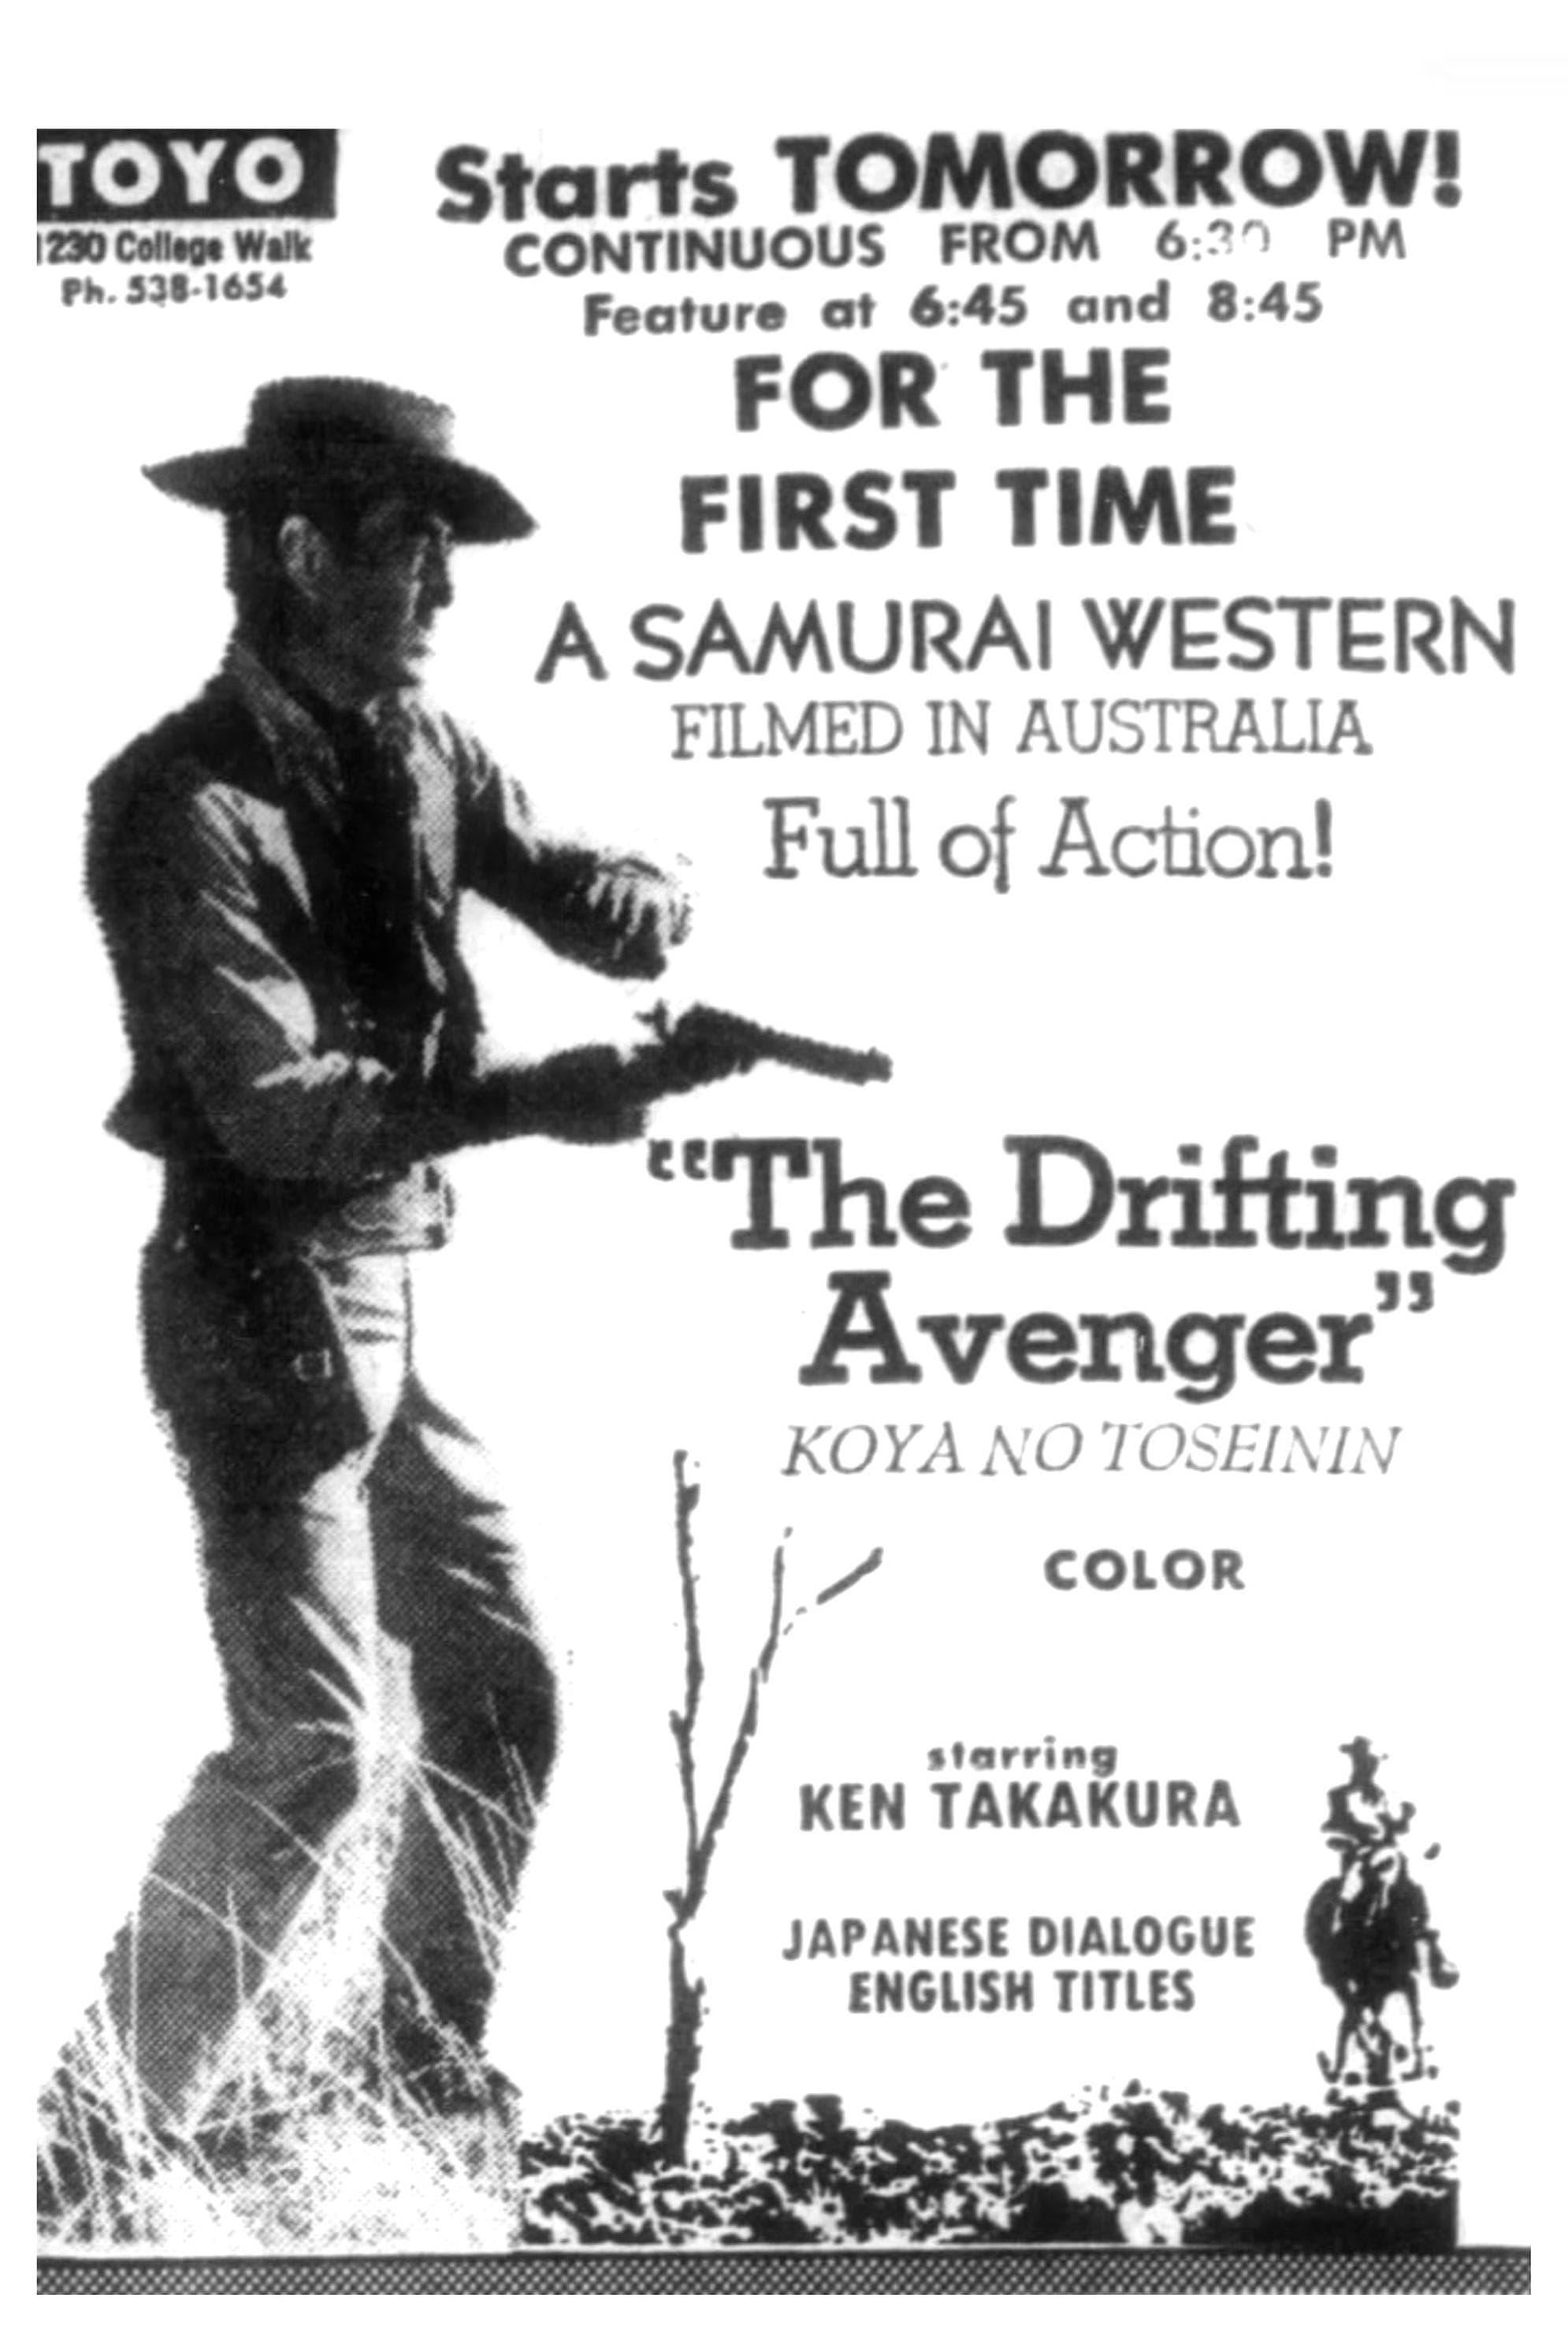 The Drifting Avenger poster